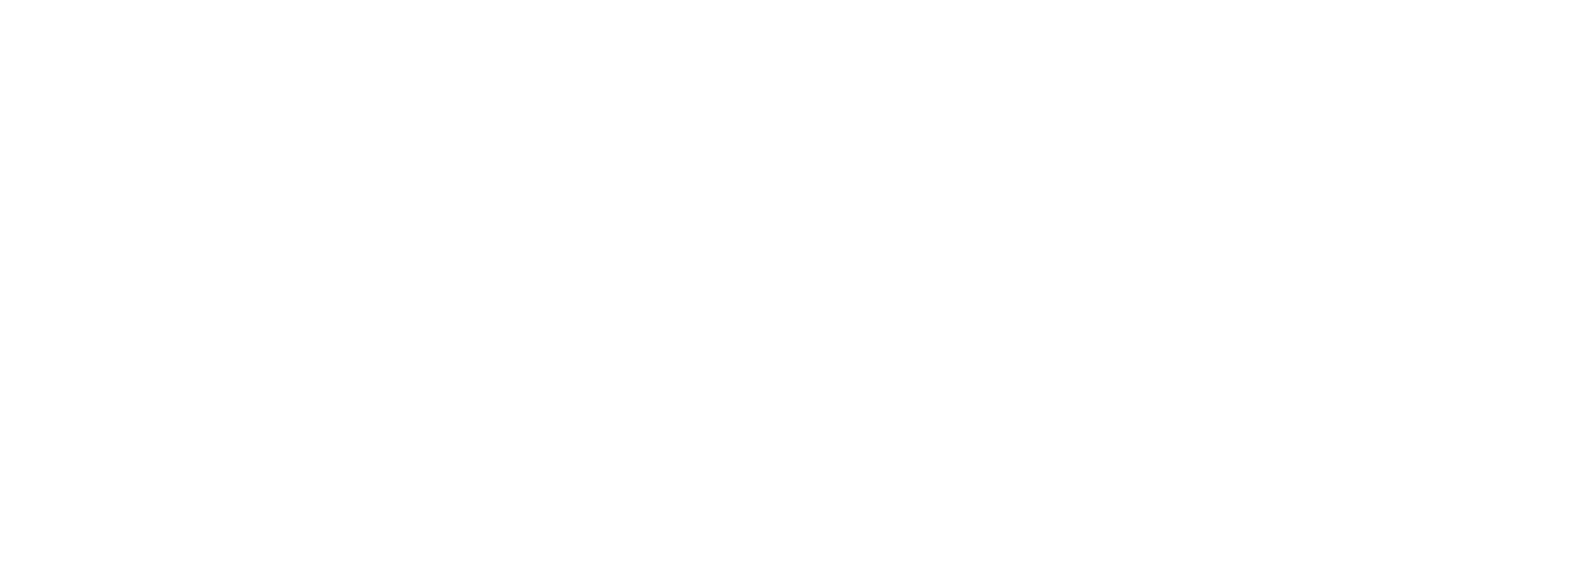 Zymeworks logo grand pour les fonds sombres (PNG transparent)